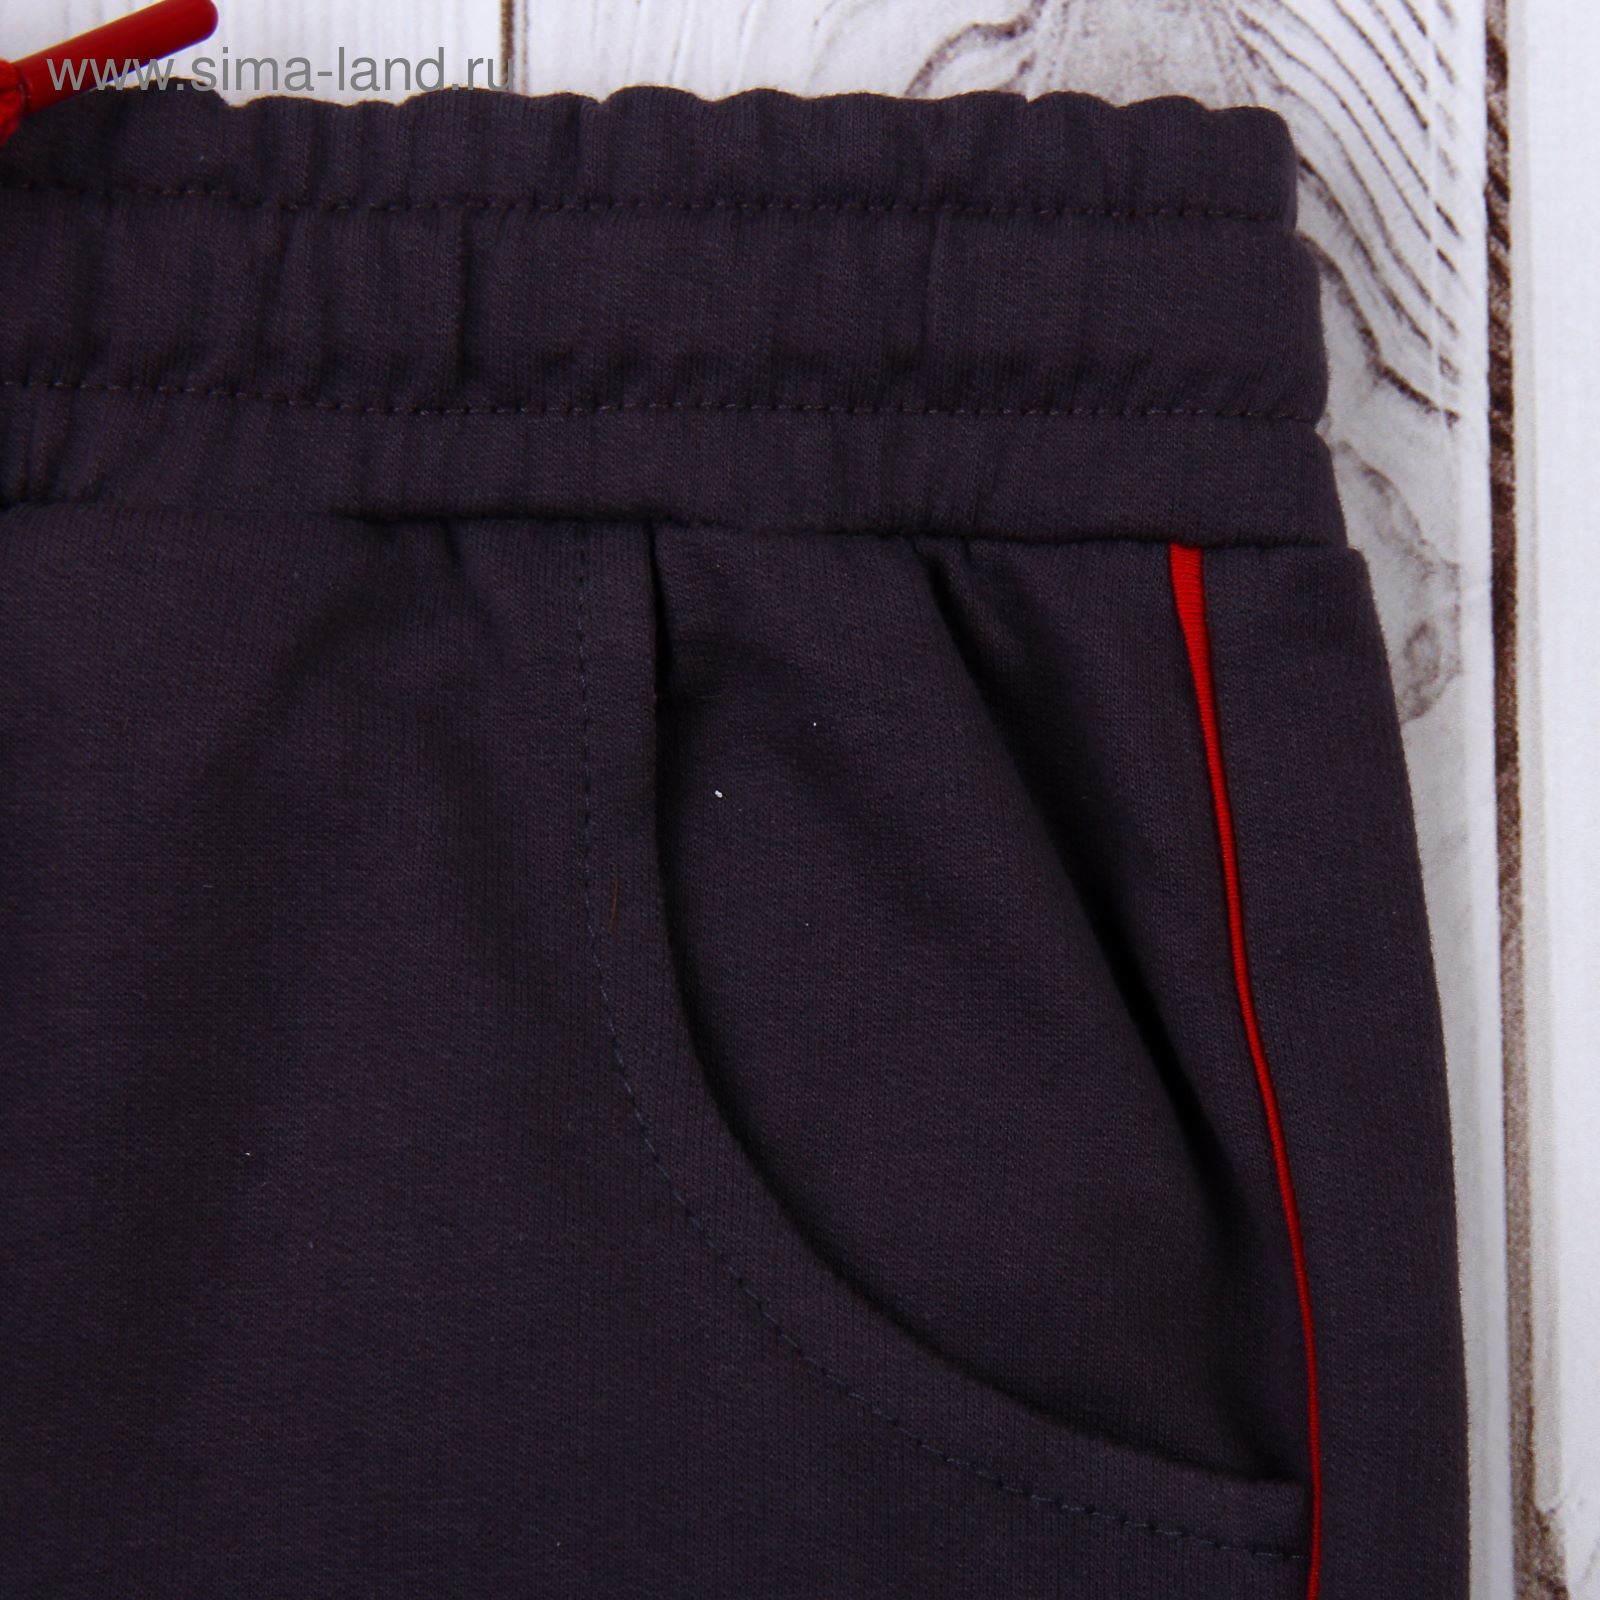 Комплект для мальчика (толстовка, брюки), рост 98-104 см, цвет чёрный (арт. 100-M_Д)